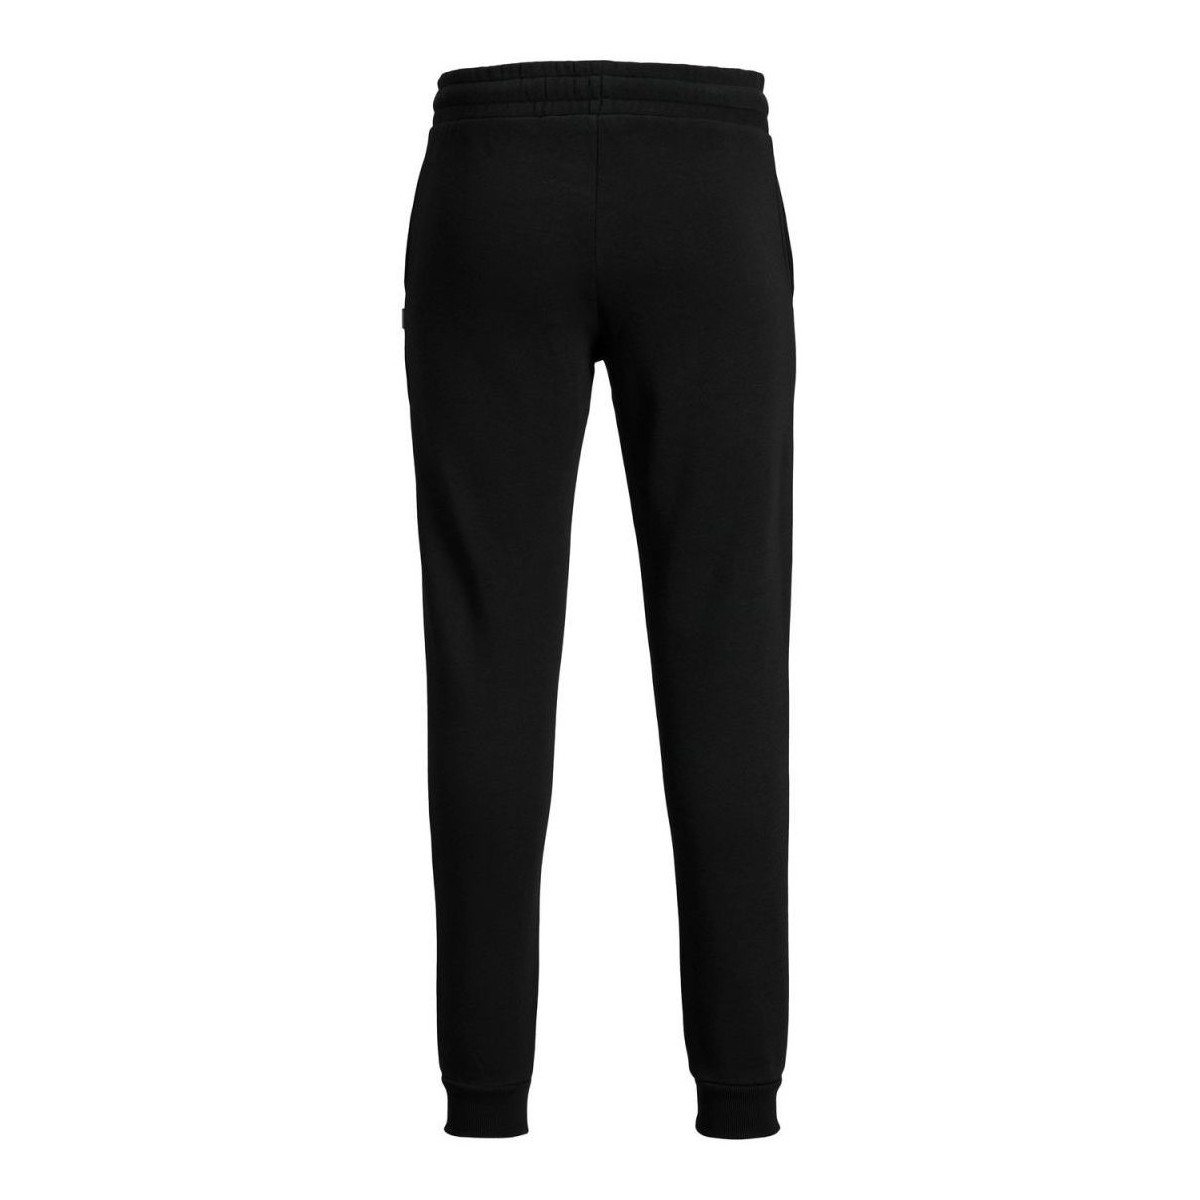 Vêtements Garçon Pantalons Jack & Jones 12162855 PANT - BRUSHED-BLACK BRUSHED Noir